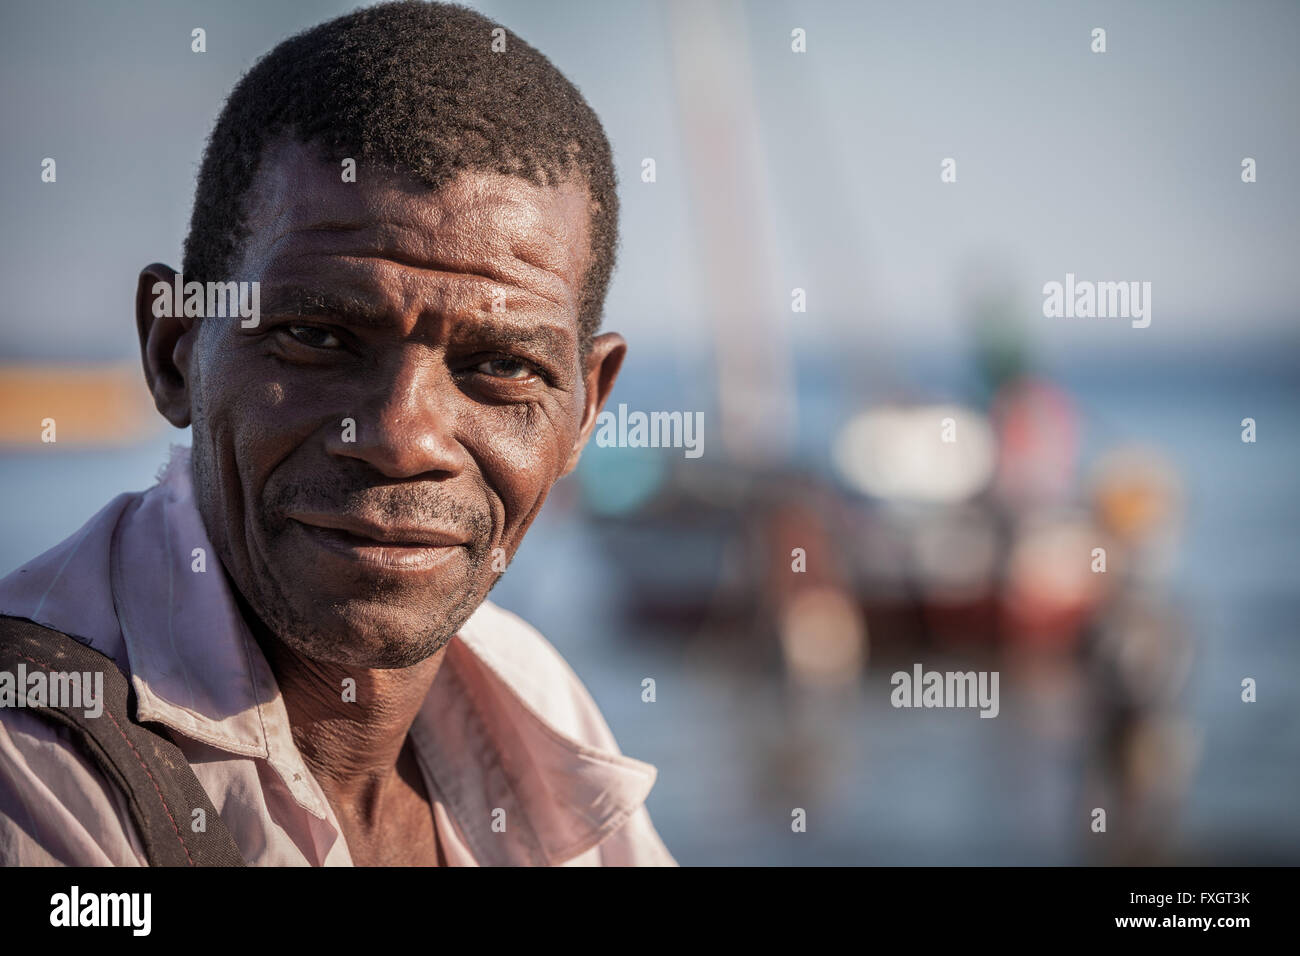 Mozambique, África,un retrato de un hombre sonriente piel bronceada. Foto de stock